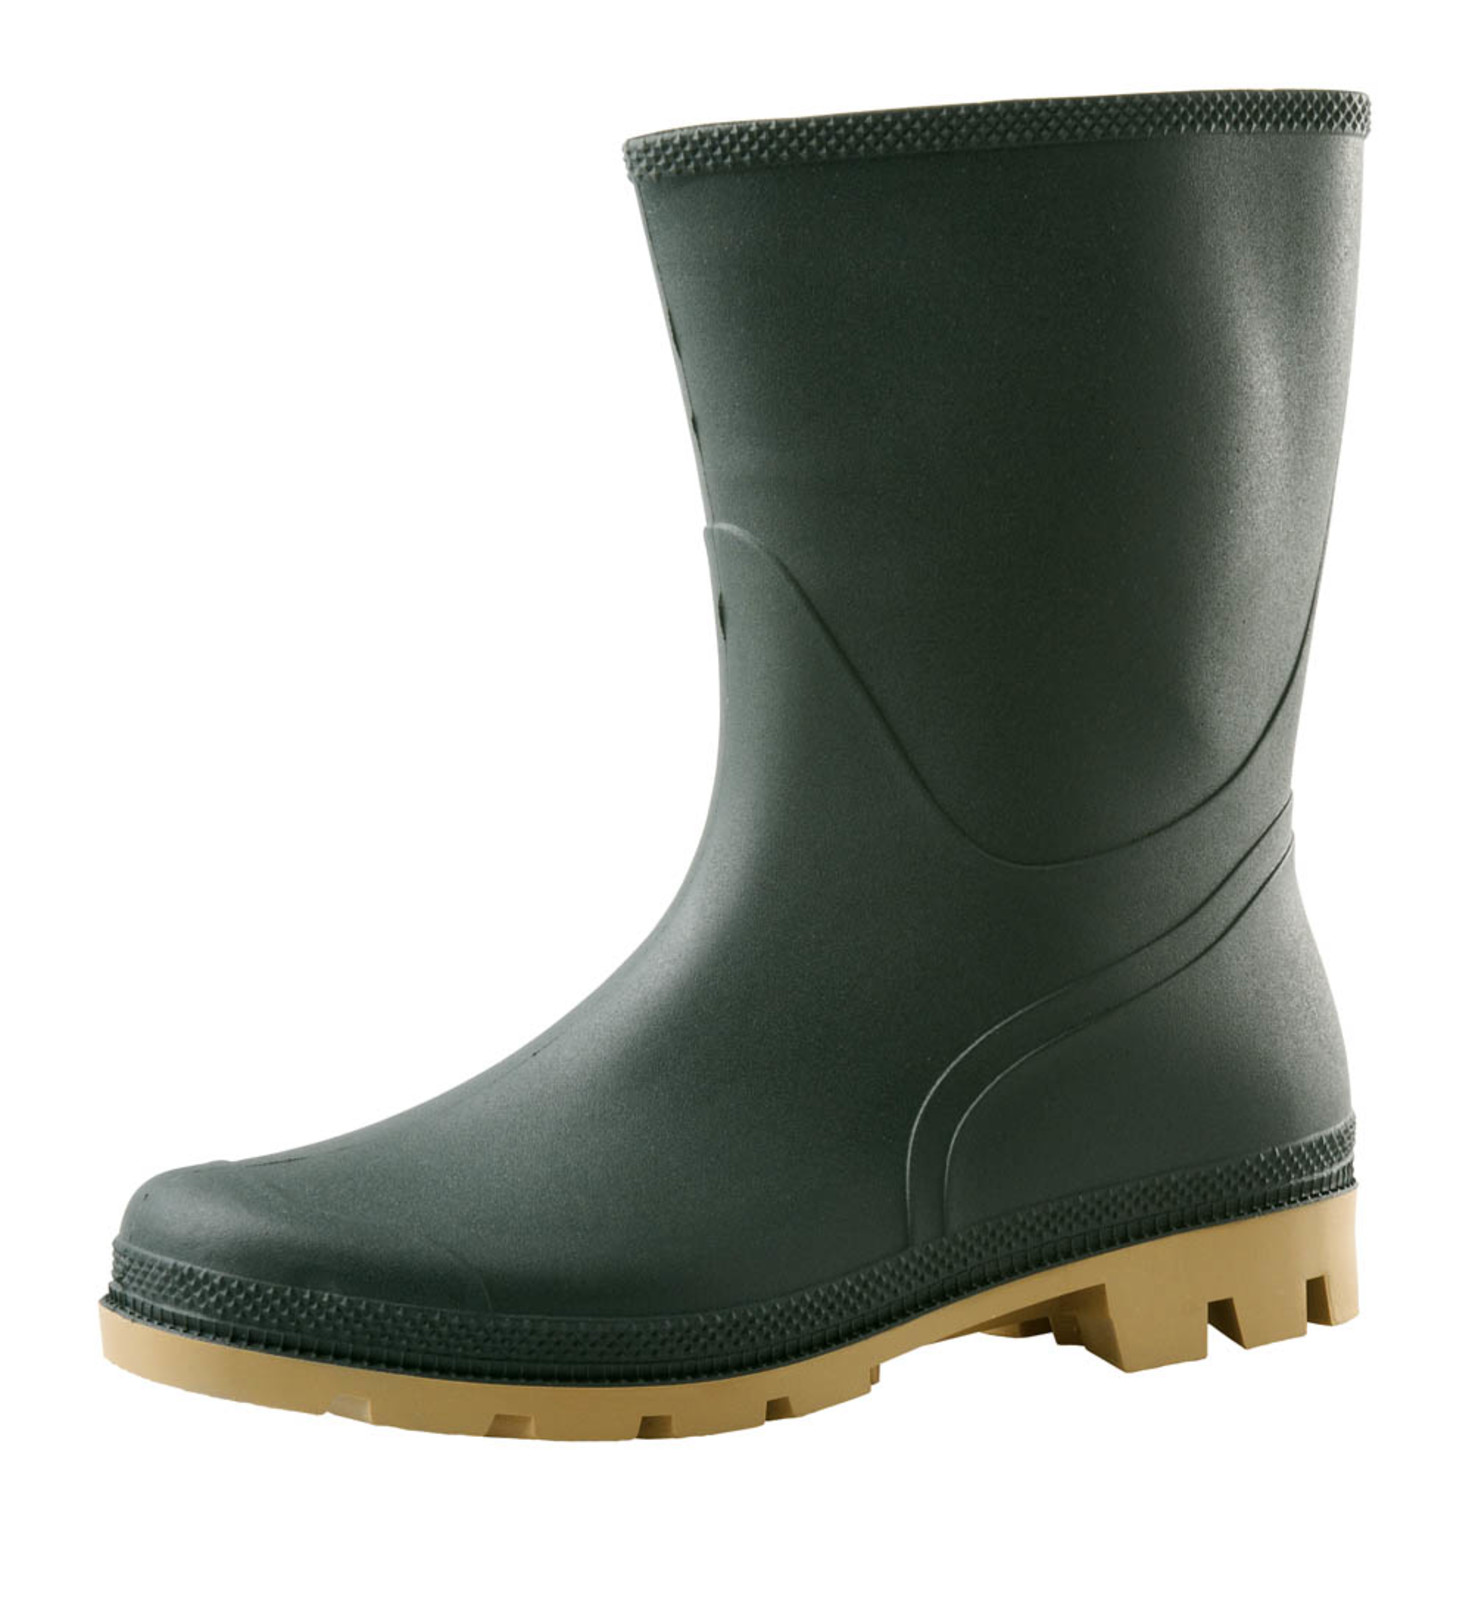 Gumáky Boots Troncheto PVC nízke - veľkosť: 40, farba: zelená